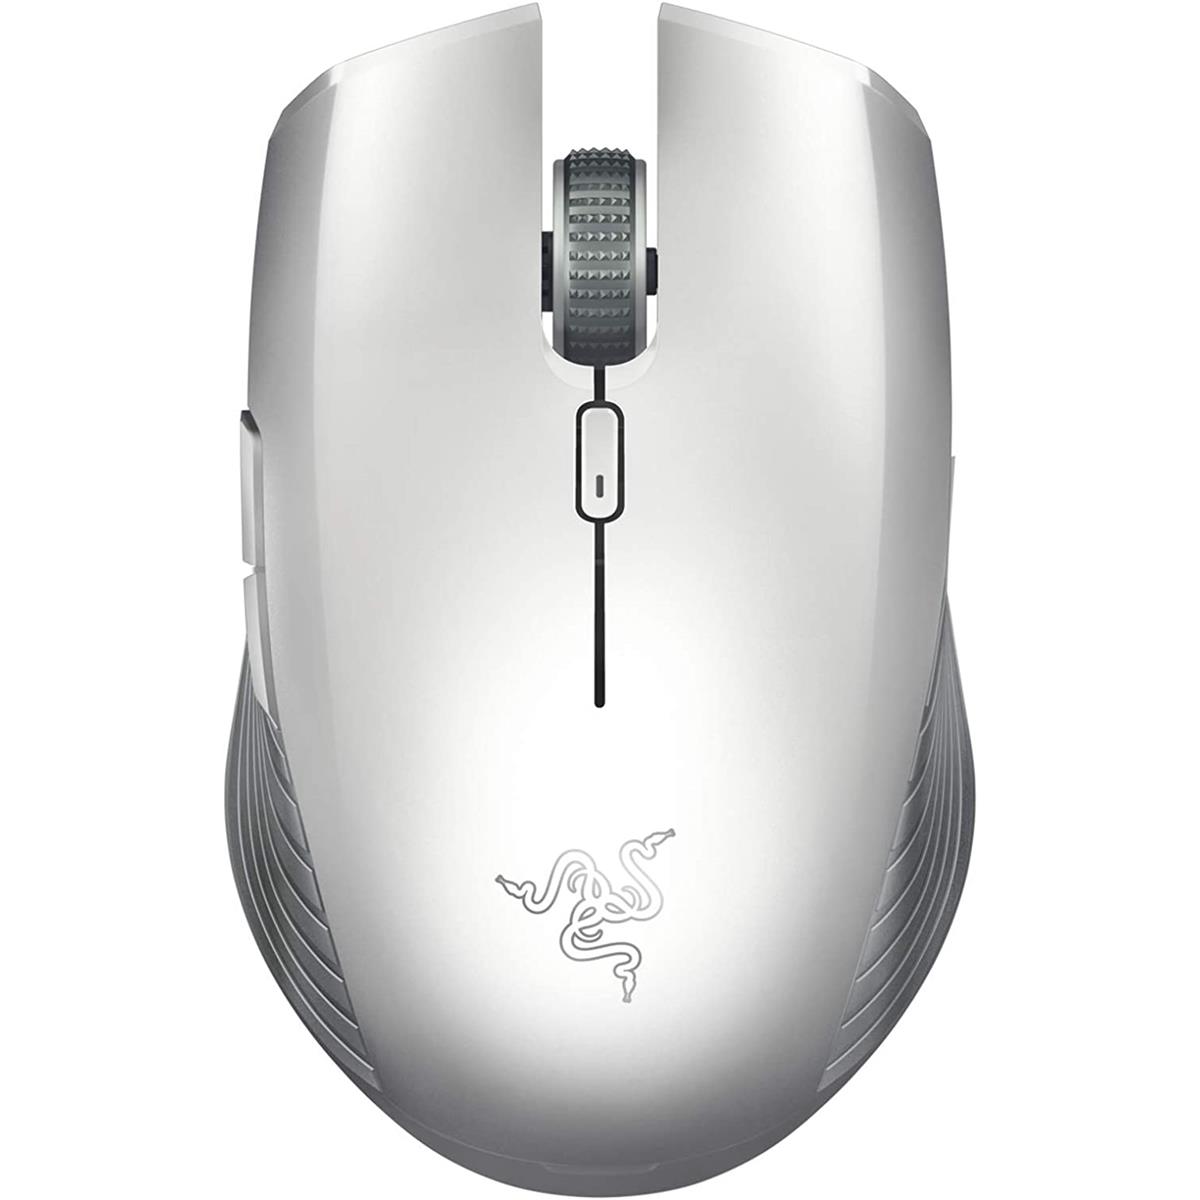 Razer Atheris - Mobile Mouse - White